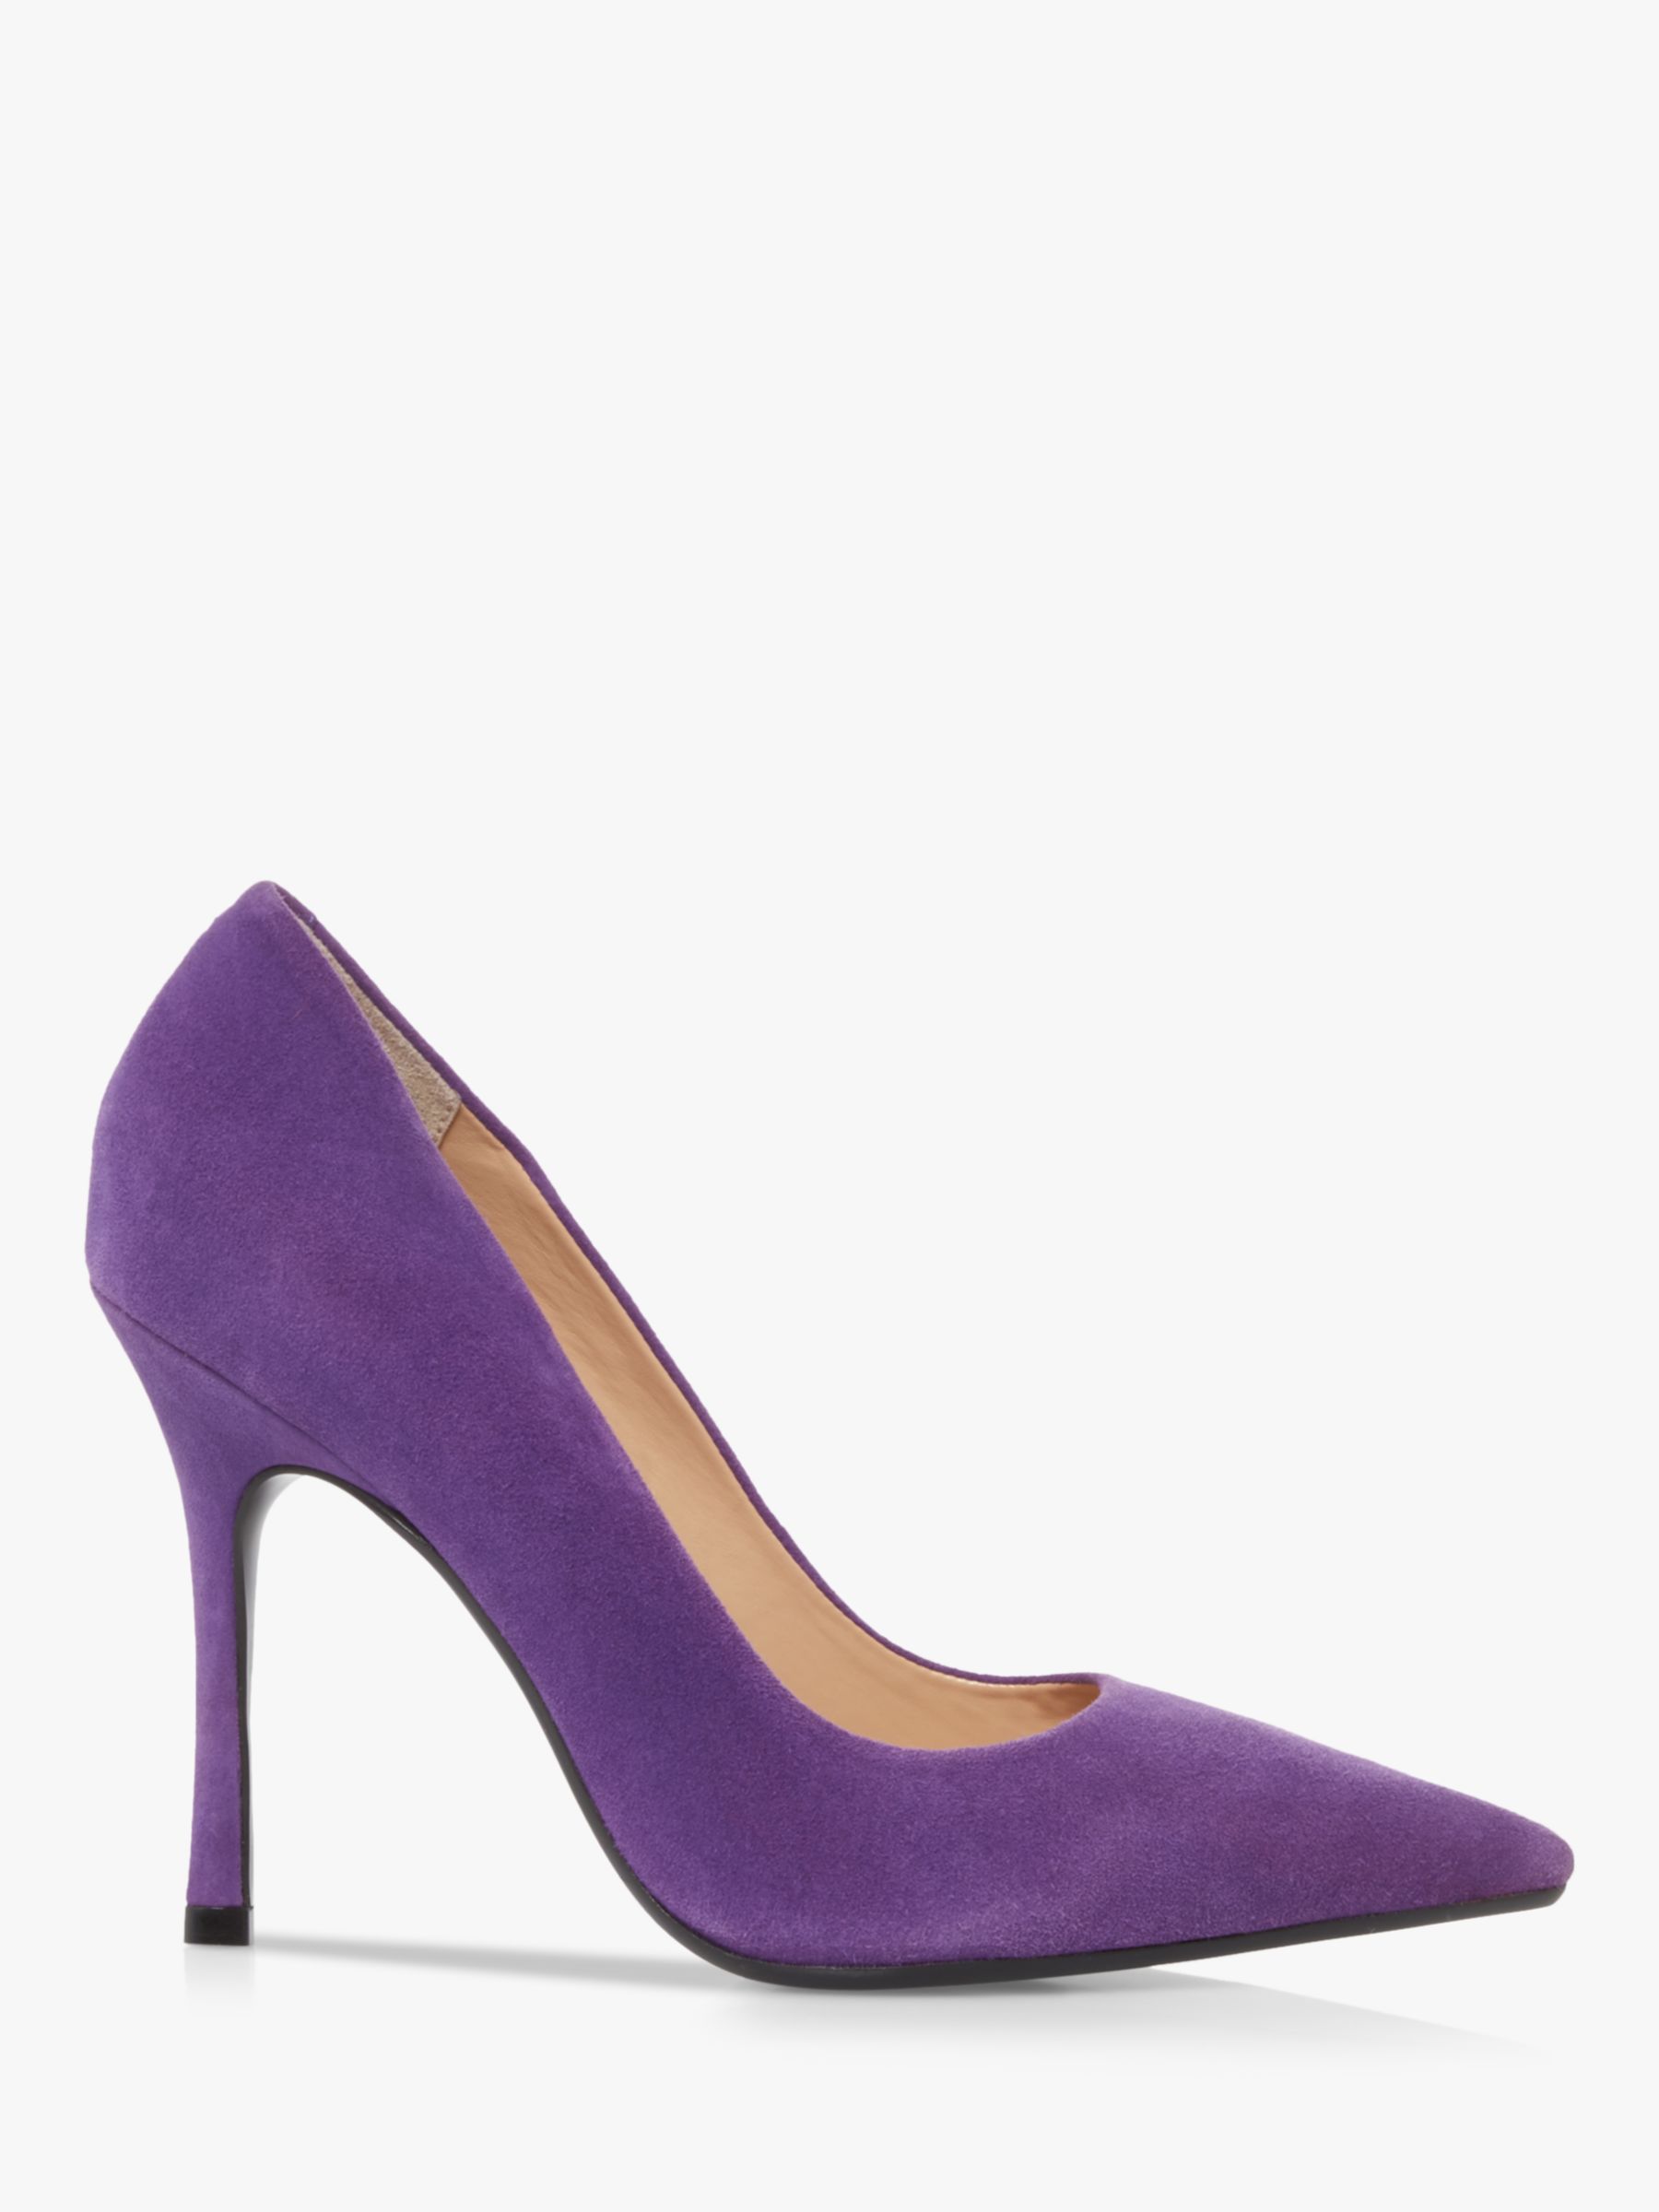 Dune Belaire Suede Court Shoes, Purple 